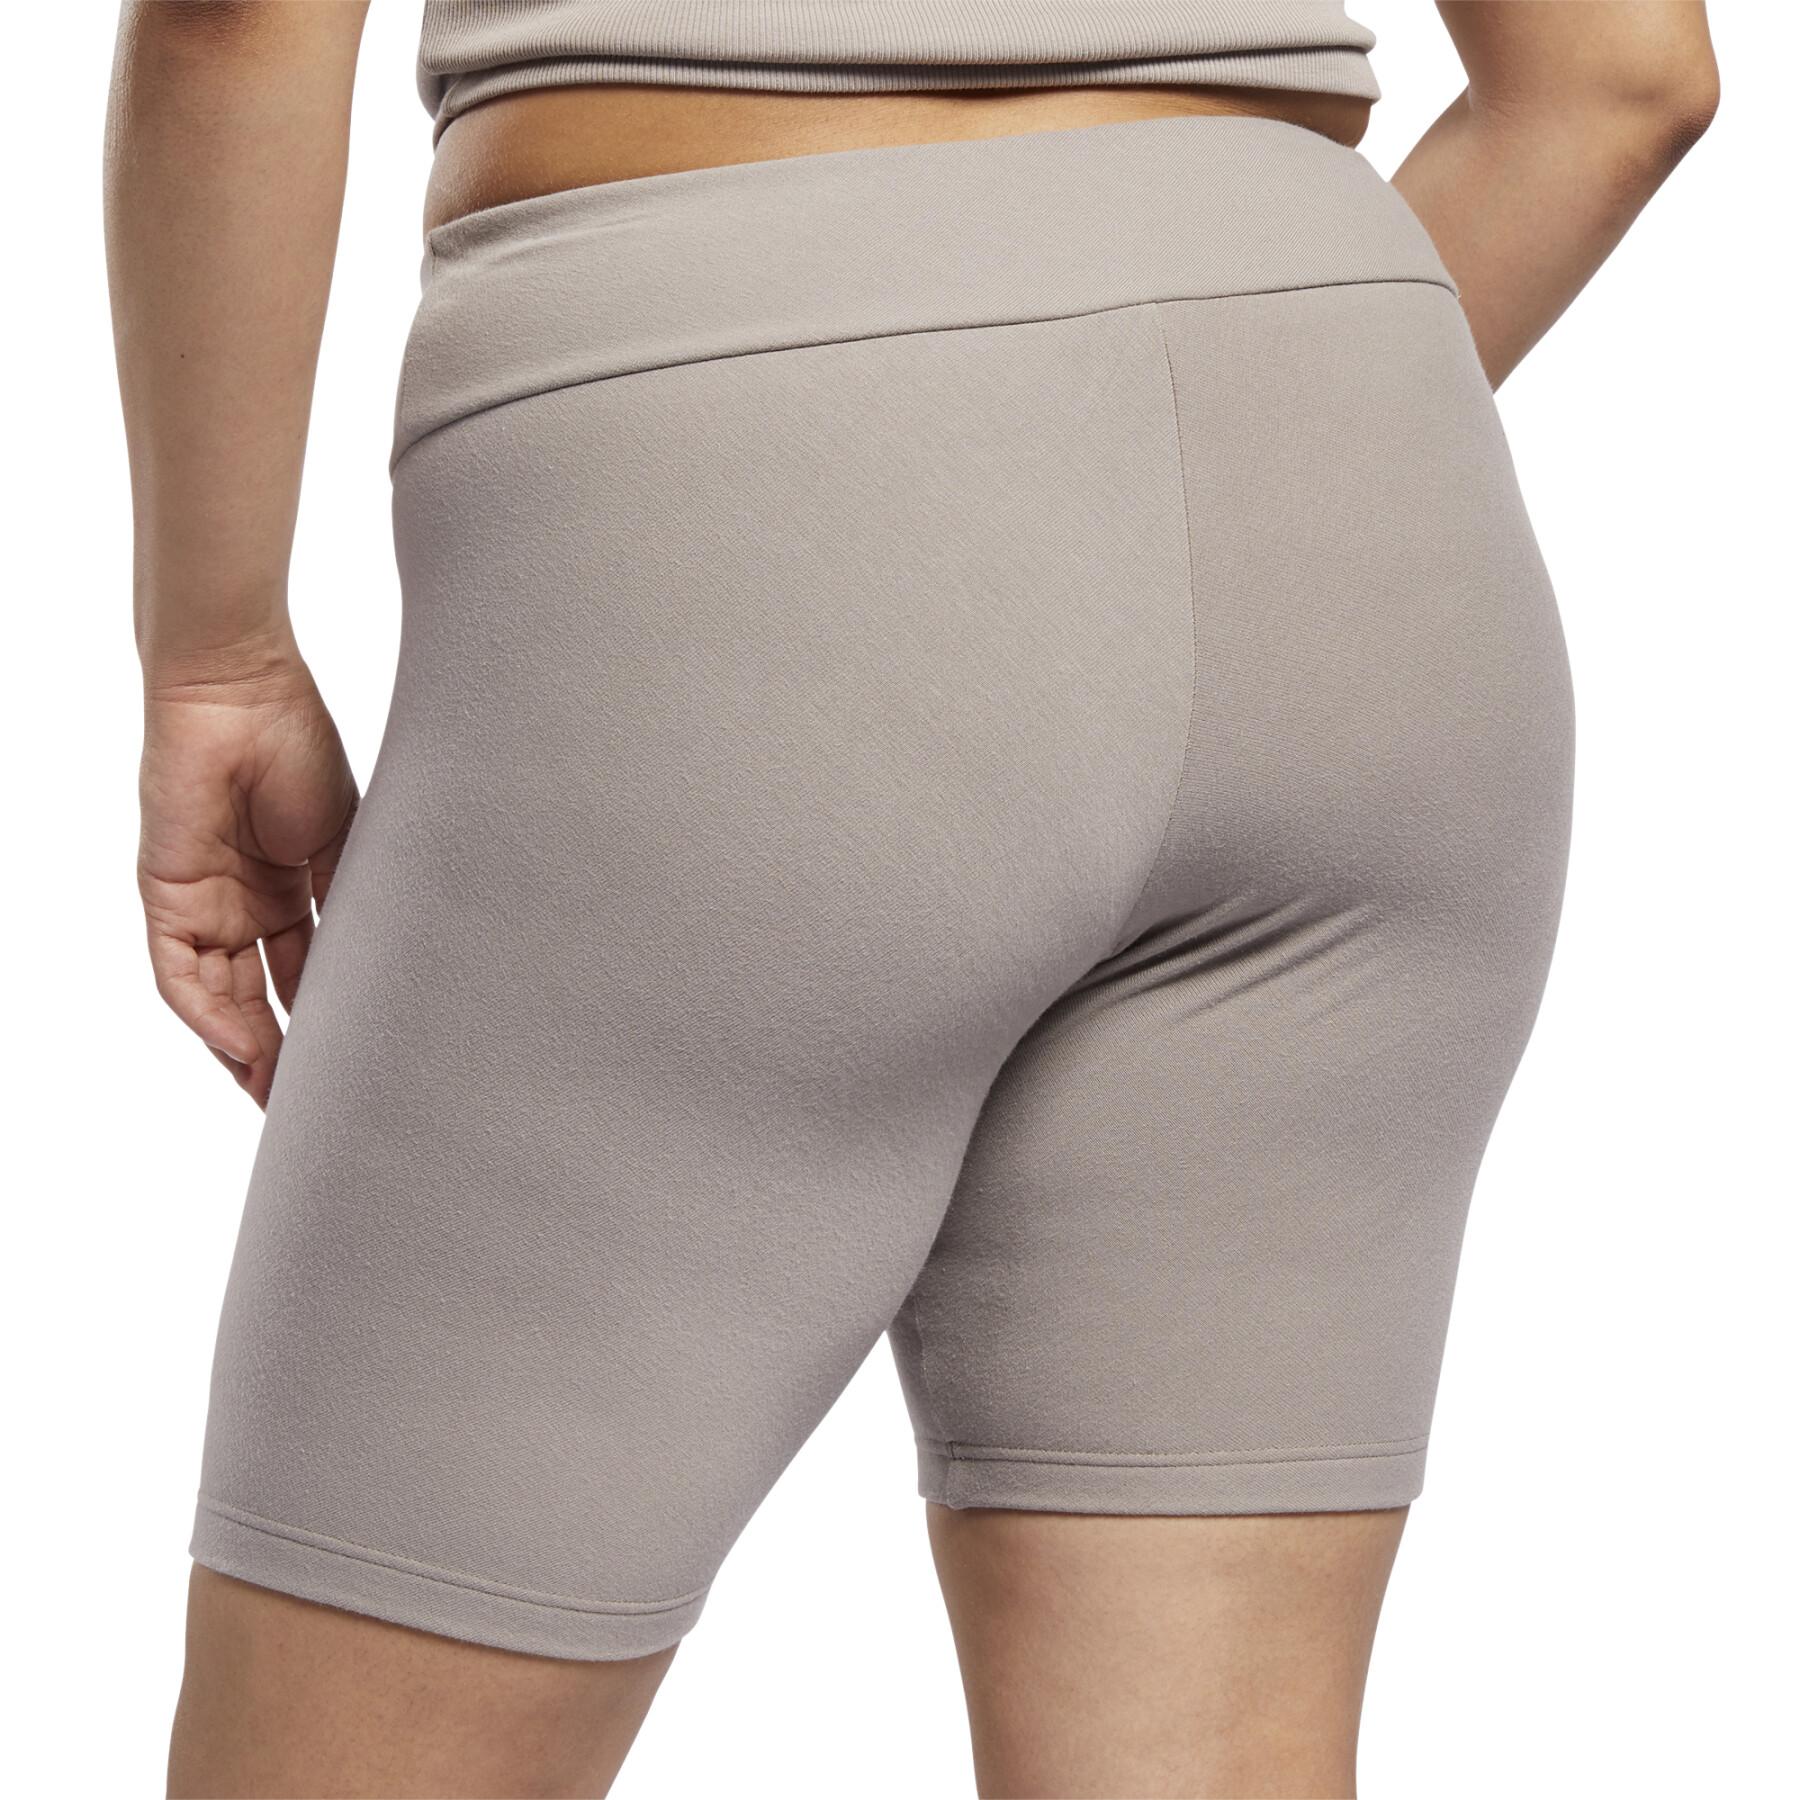 Shorts für Frauen in großen Größen Reebok